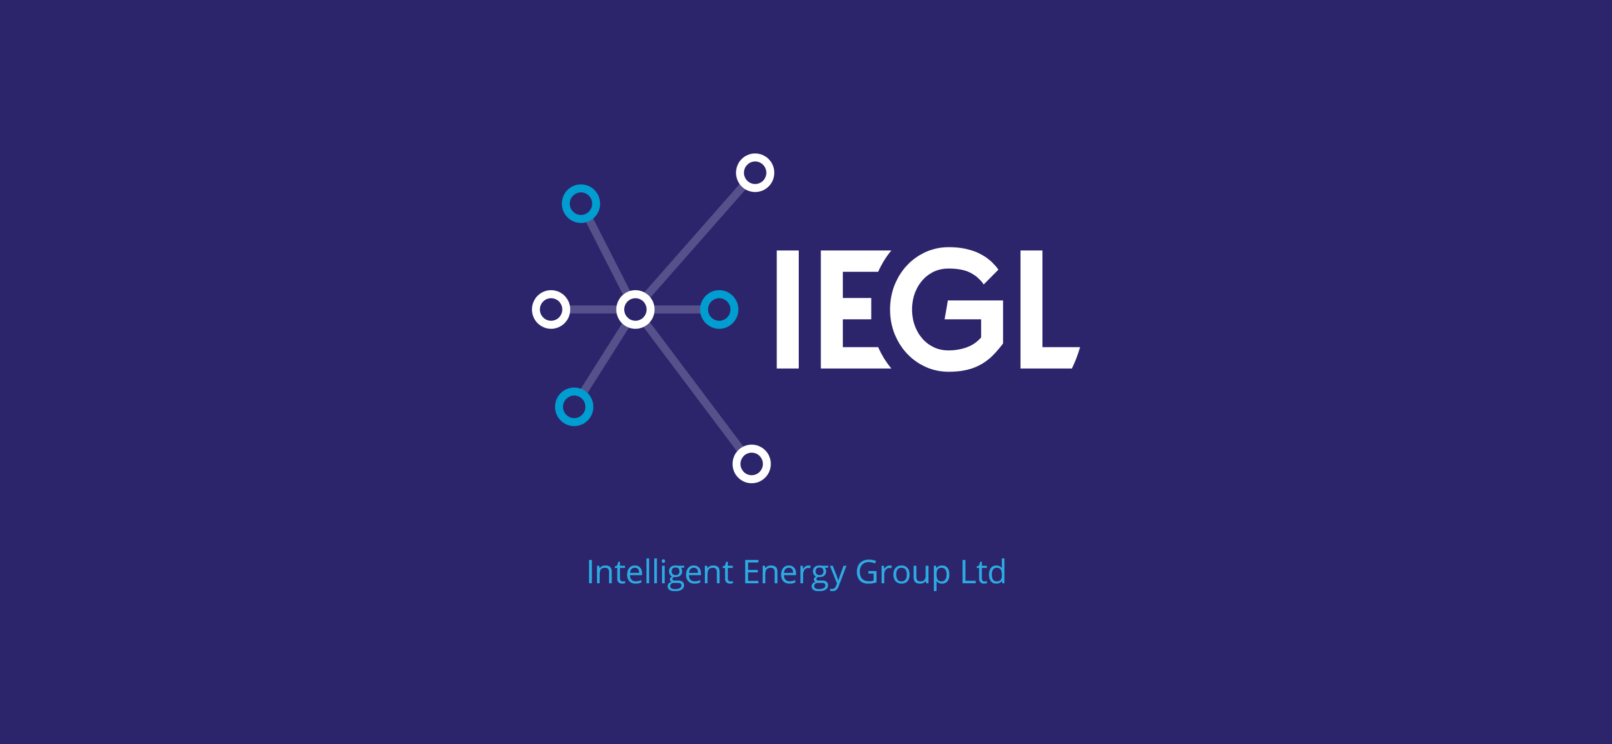 IEGL logo design